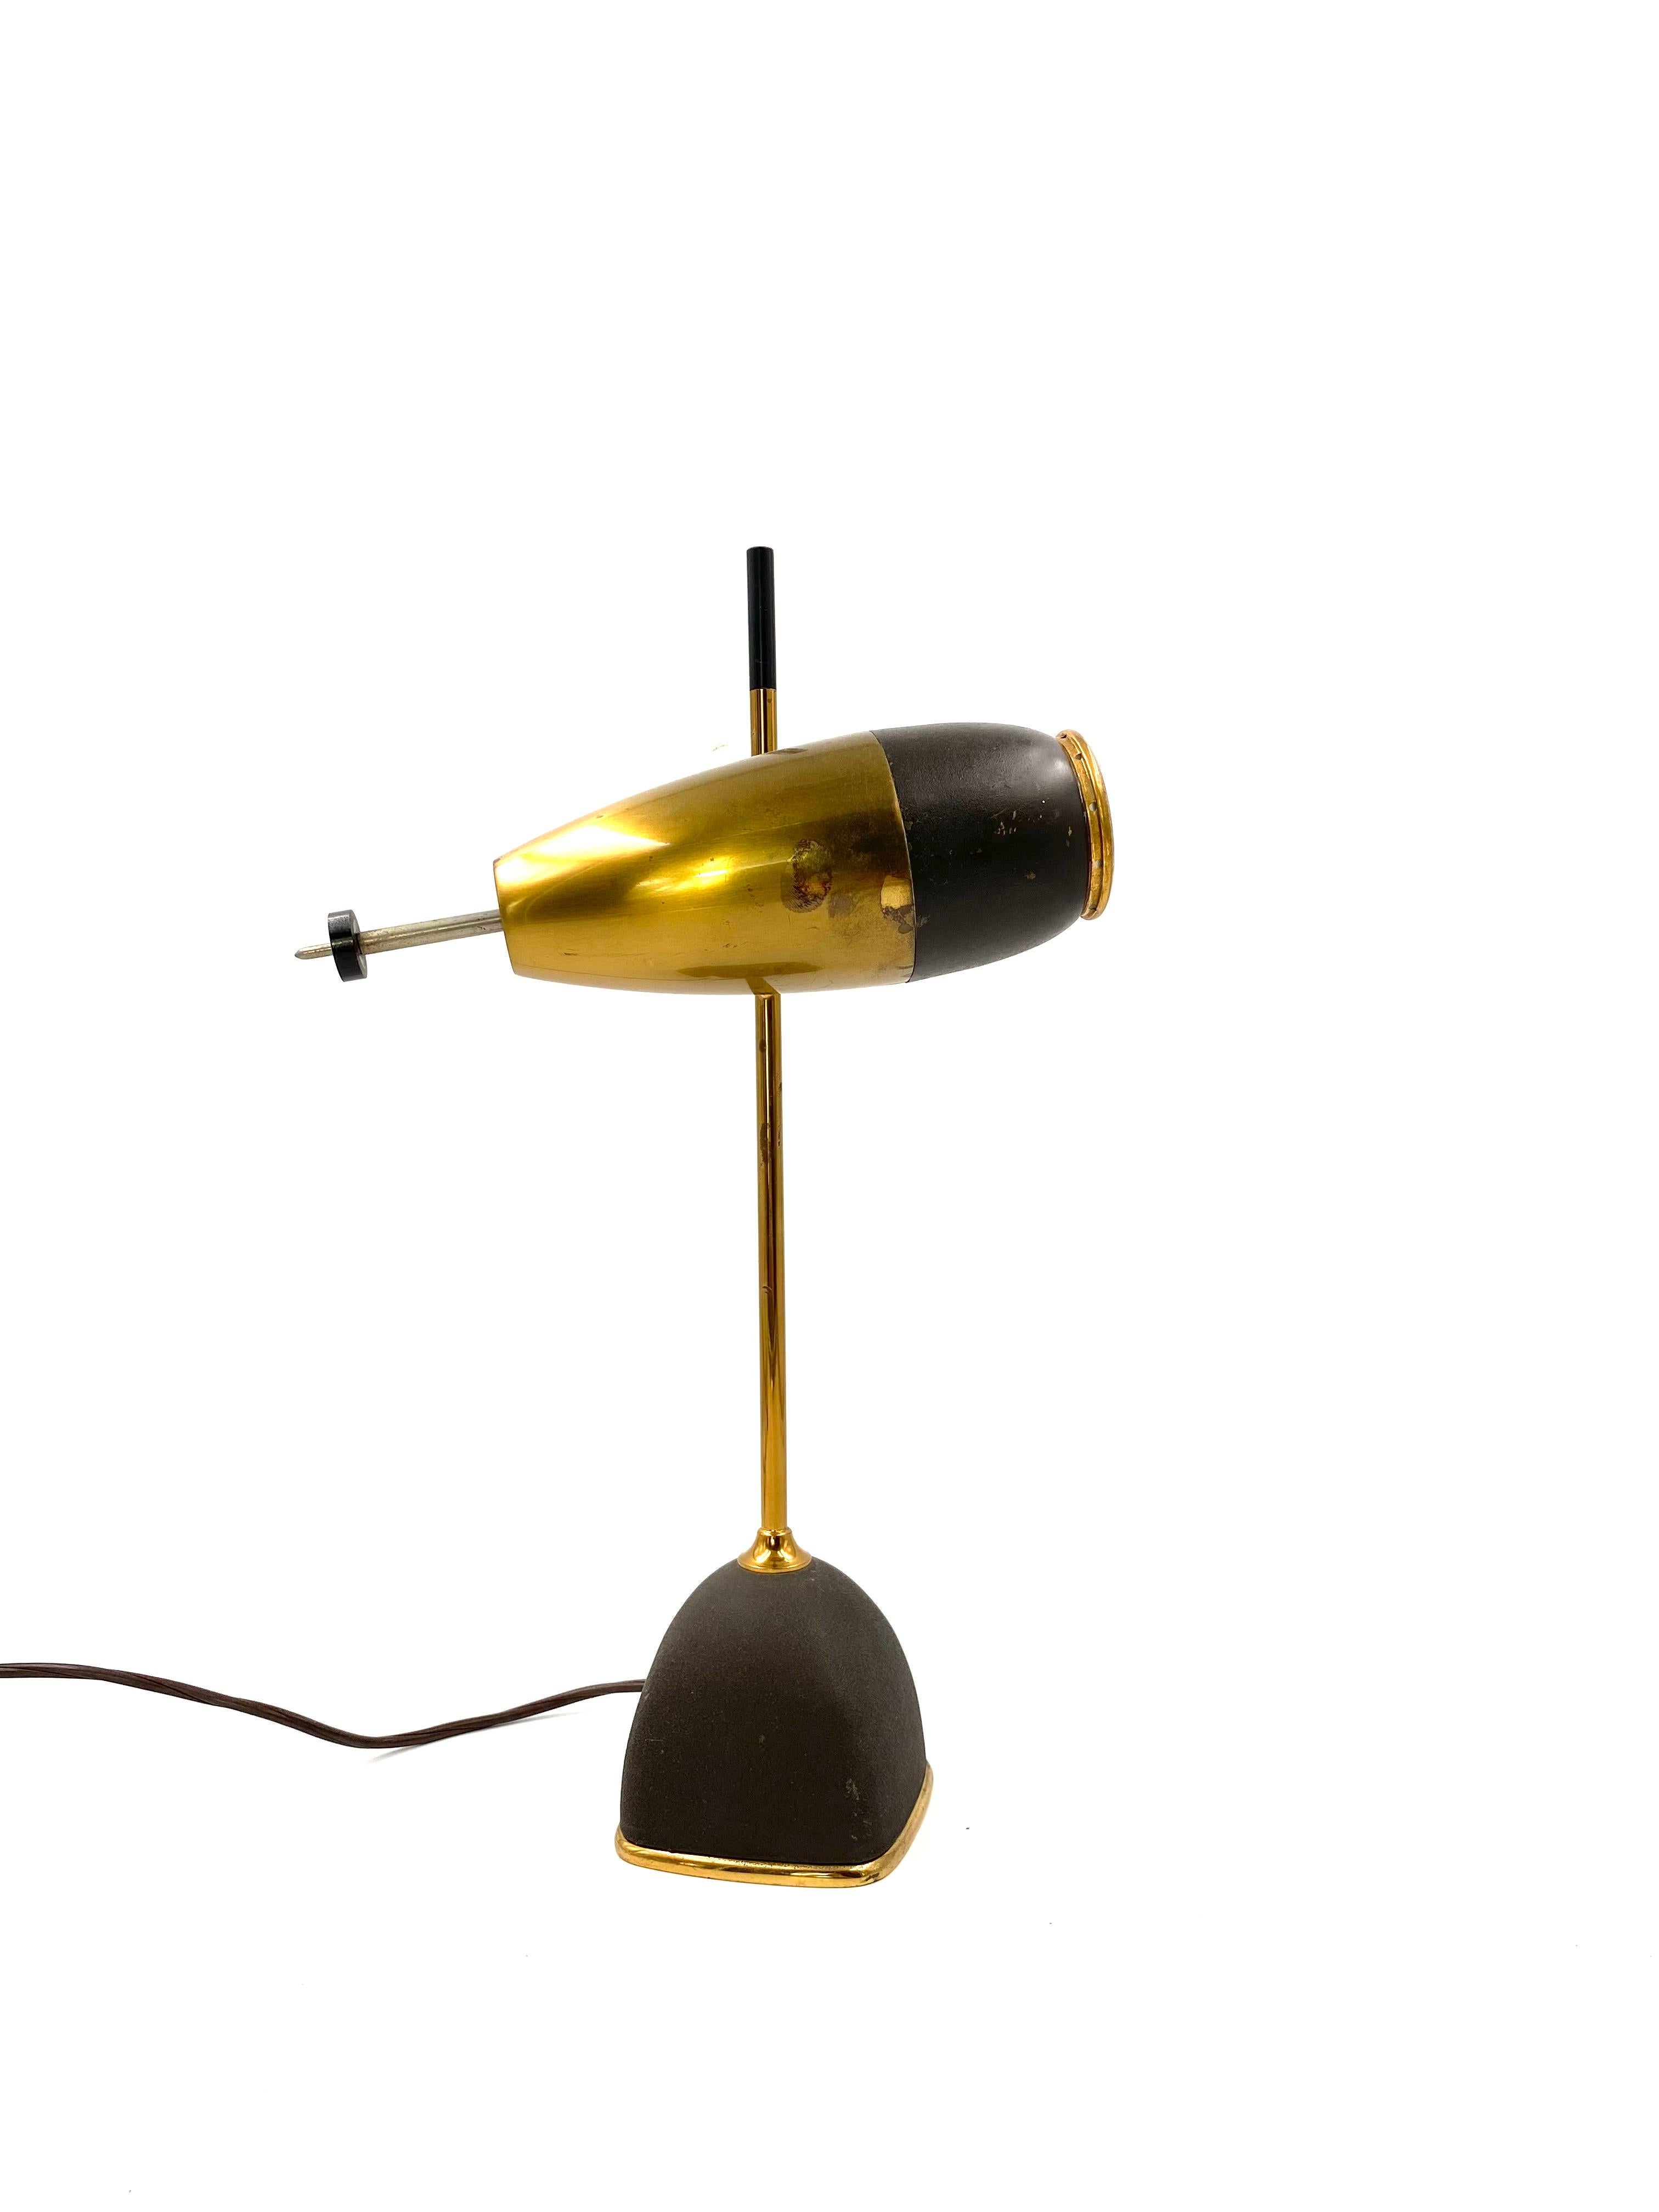 Oscar Torlasco rare mod.577 lampe de table / bureau

Prod. Lumi, Italie, 1960 env.

structure en métal laqué et laiton. Lentille en verre.

Base conique carrée en laiton peint en noir, peint avec de la peinture ridée. Transformateur intégré. Tige en